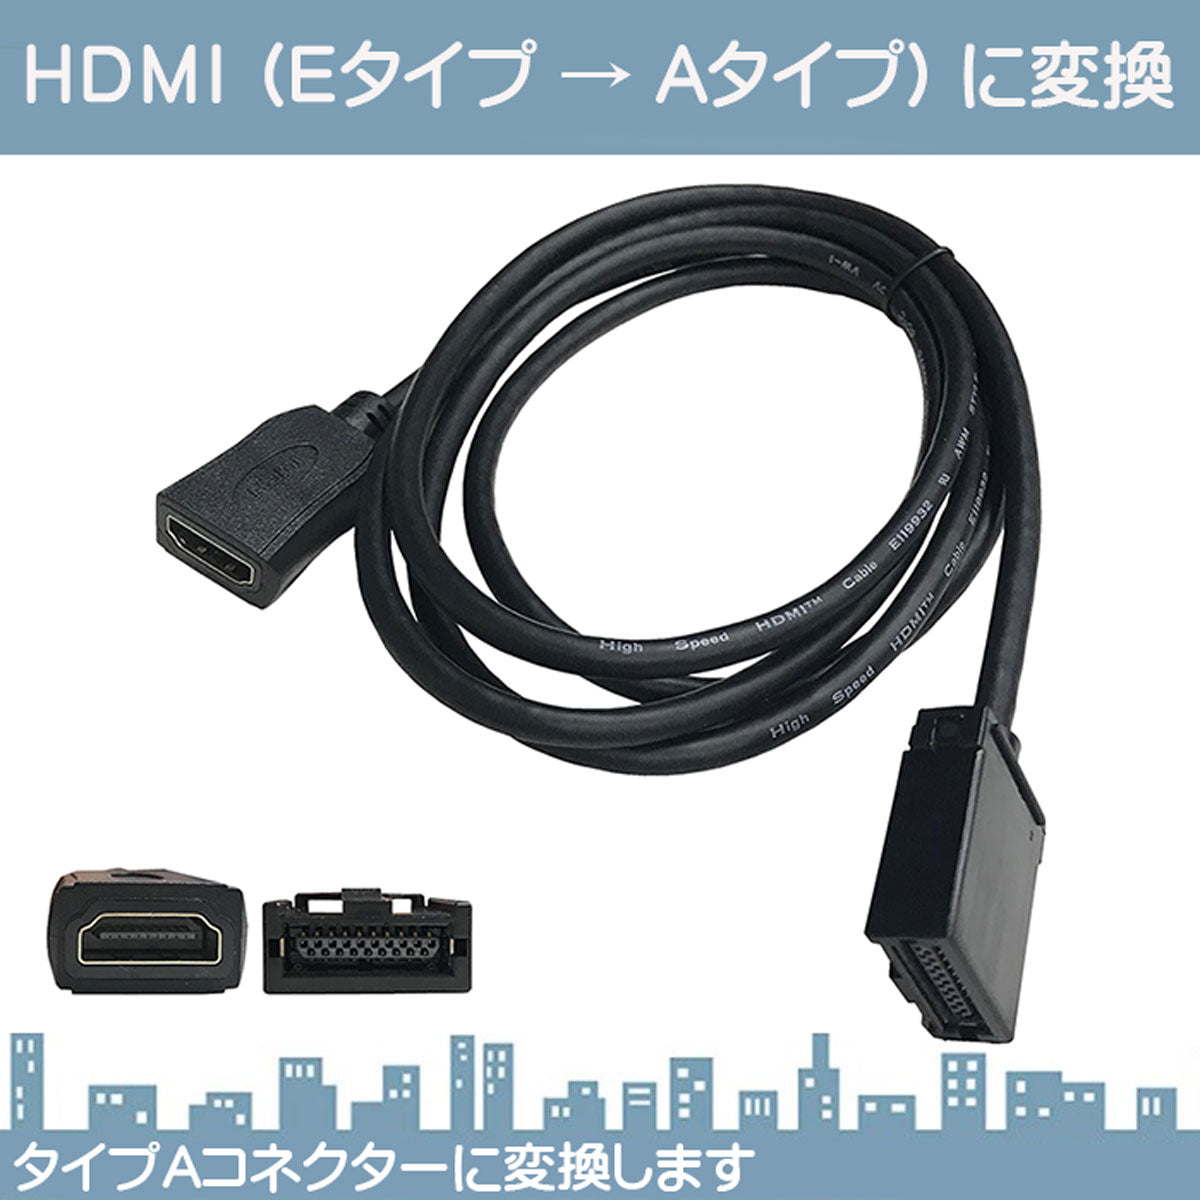 HDMI 変換ケーブル Eタイプ→Aタイプ 純正ナビ アダプター コード